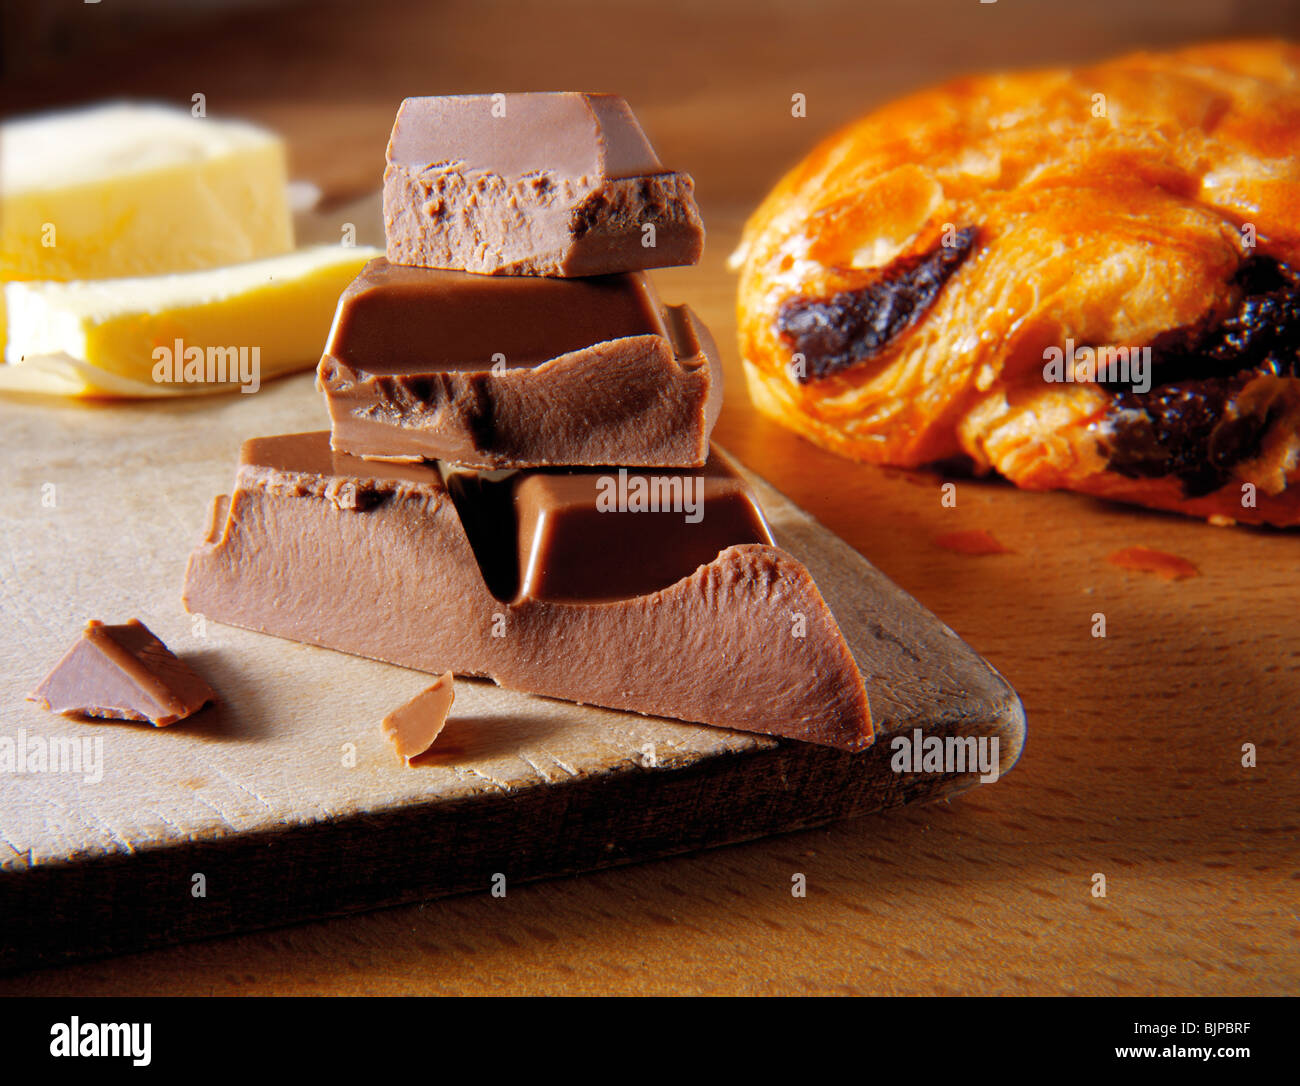 Pezzetti di cioccolato con un croissant al cioccolato. Foto di cibo Foto Stock